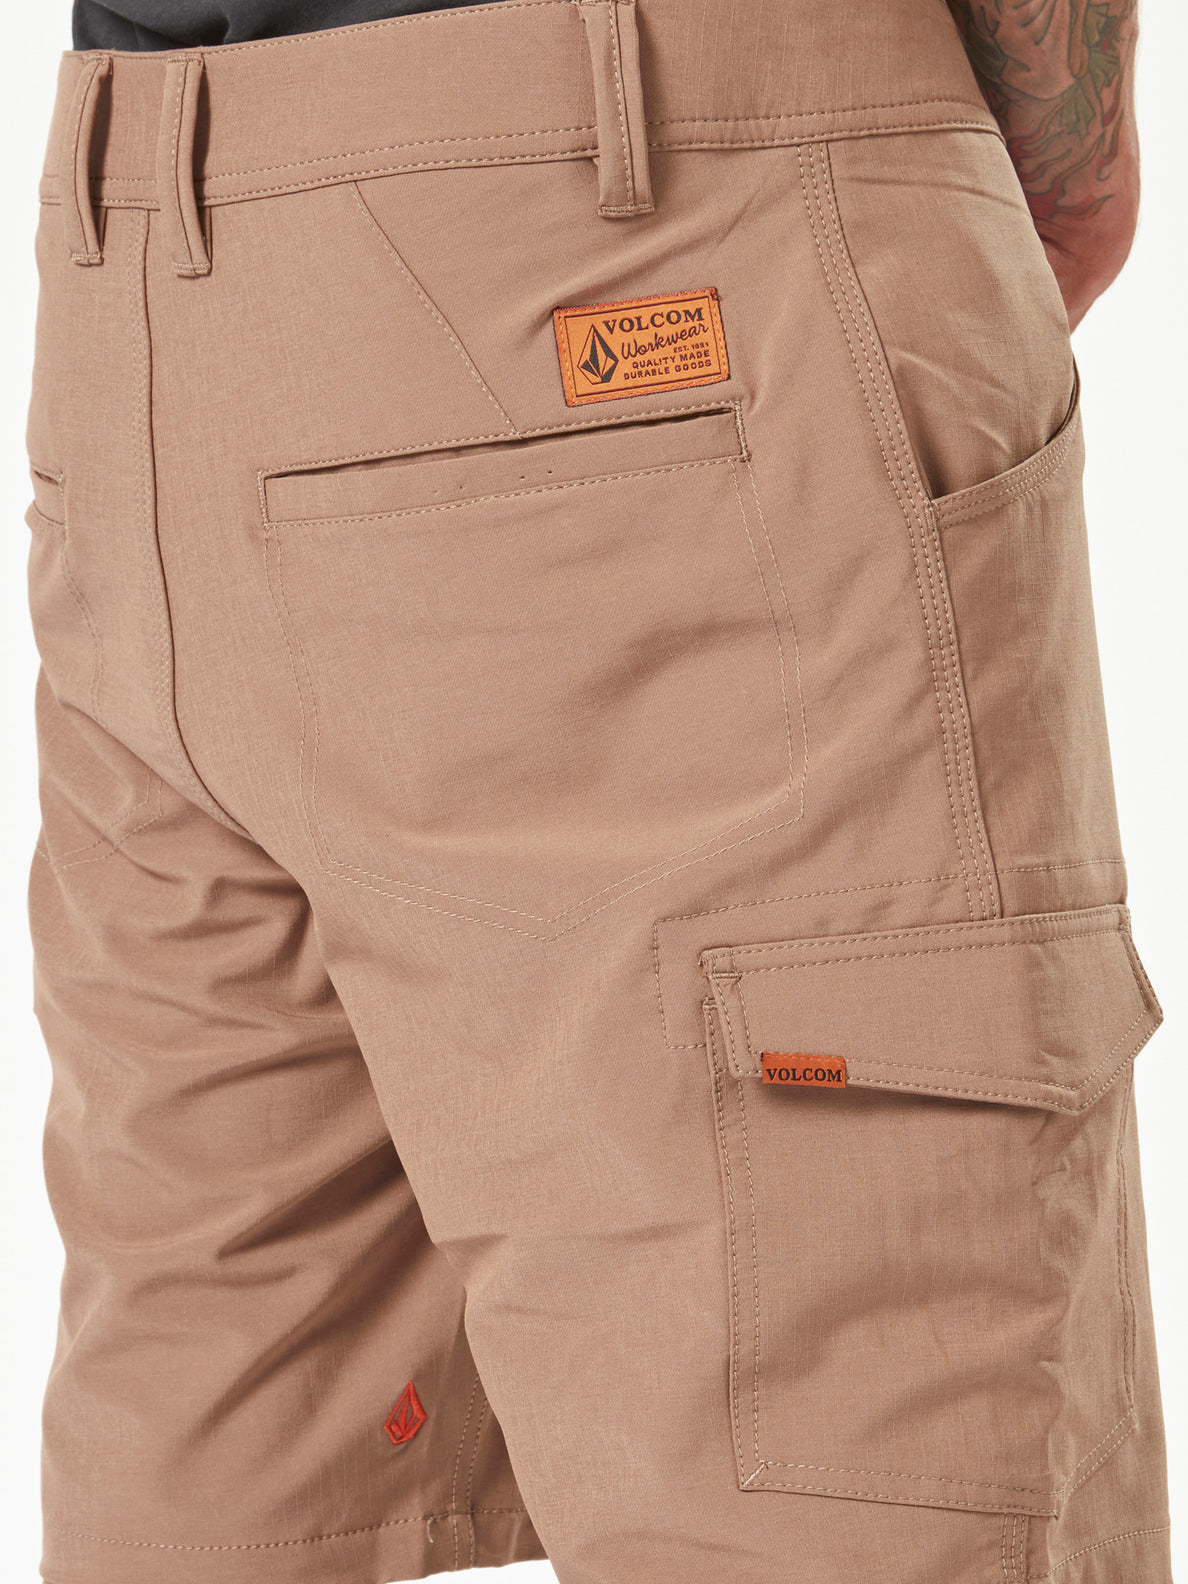 Volcom Workwear Slab Hybrid Shorts - Brindle (A3202000_BNL) [4]